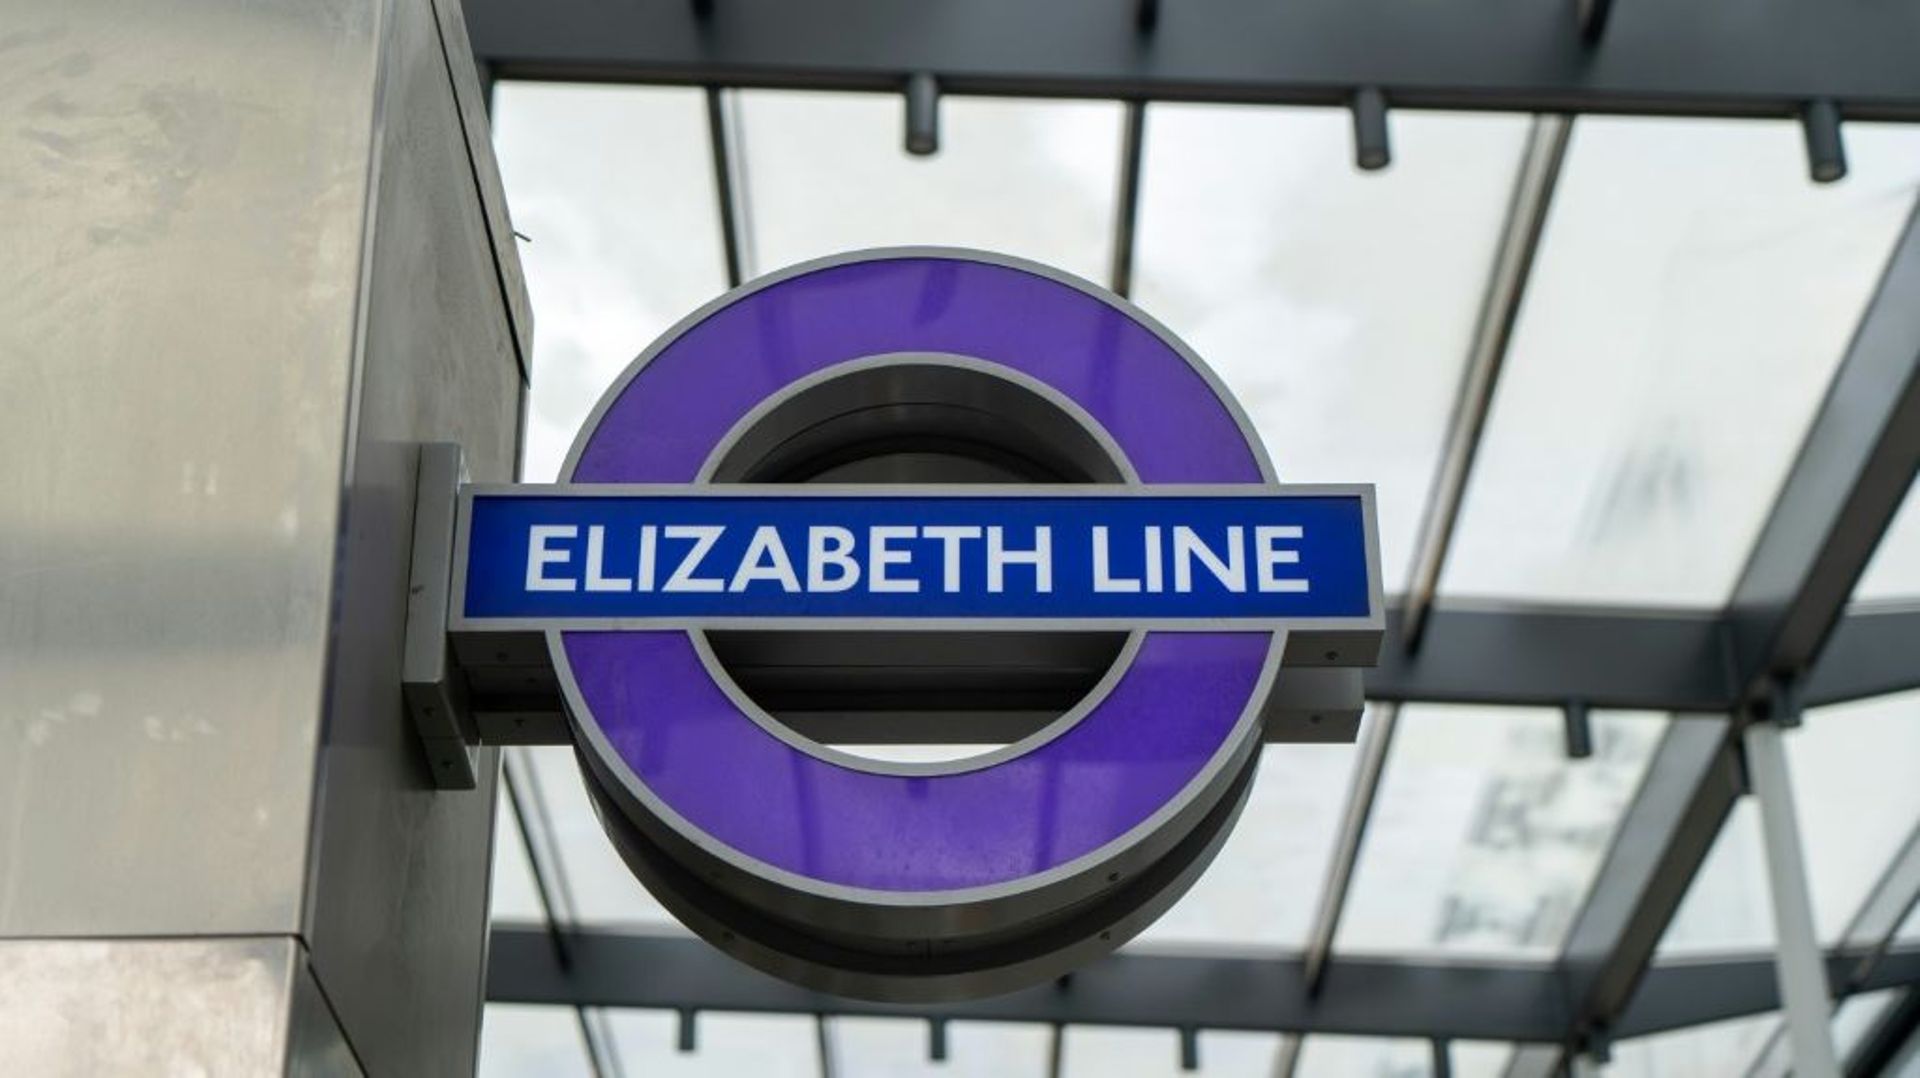 Signalétique de la ligne de métro Elizabeth line, baptisée d'après la reine Elizabeth II. Photo prise à Paddington Station à Londres le 13 mars 2022